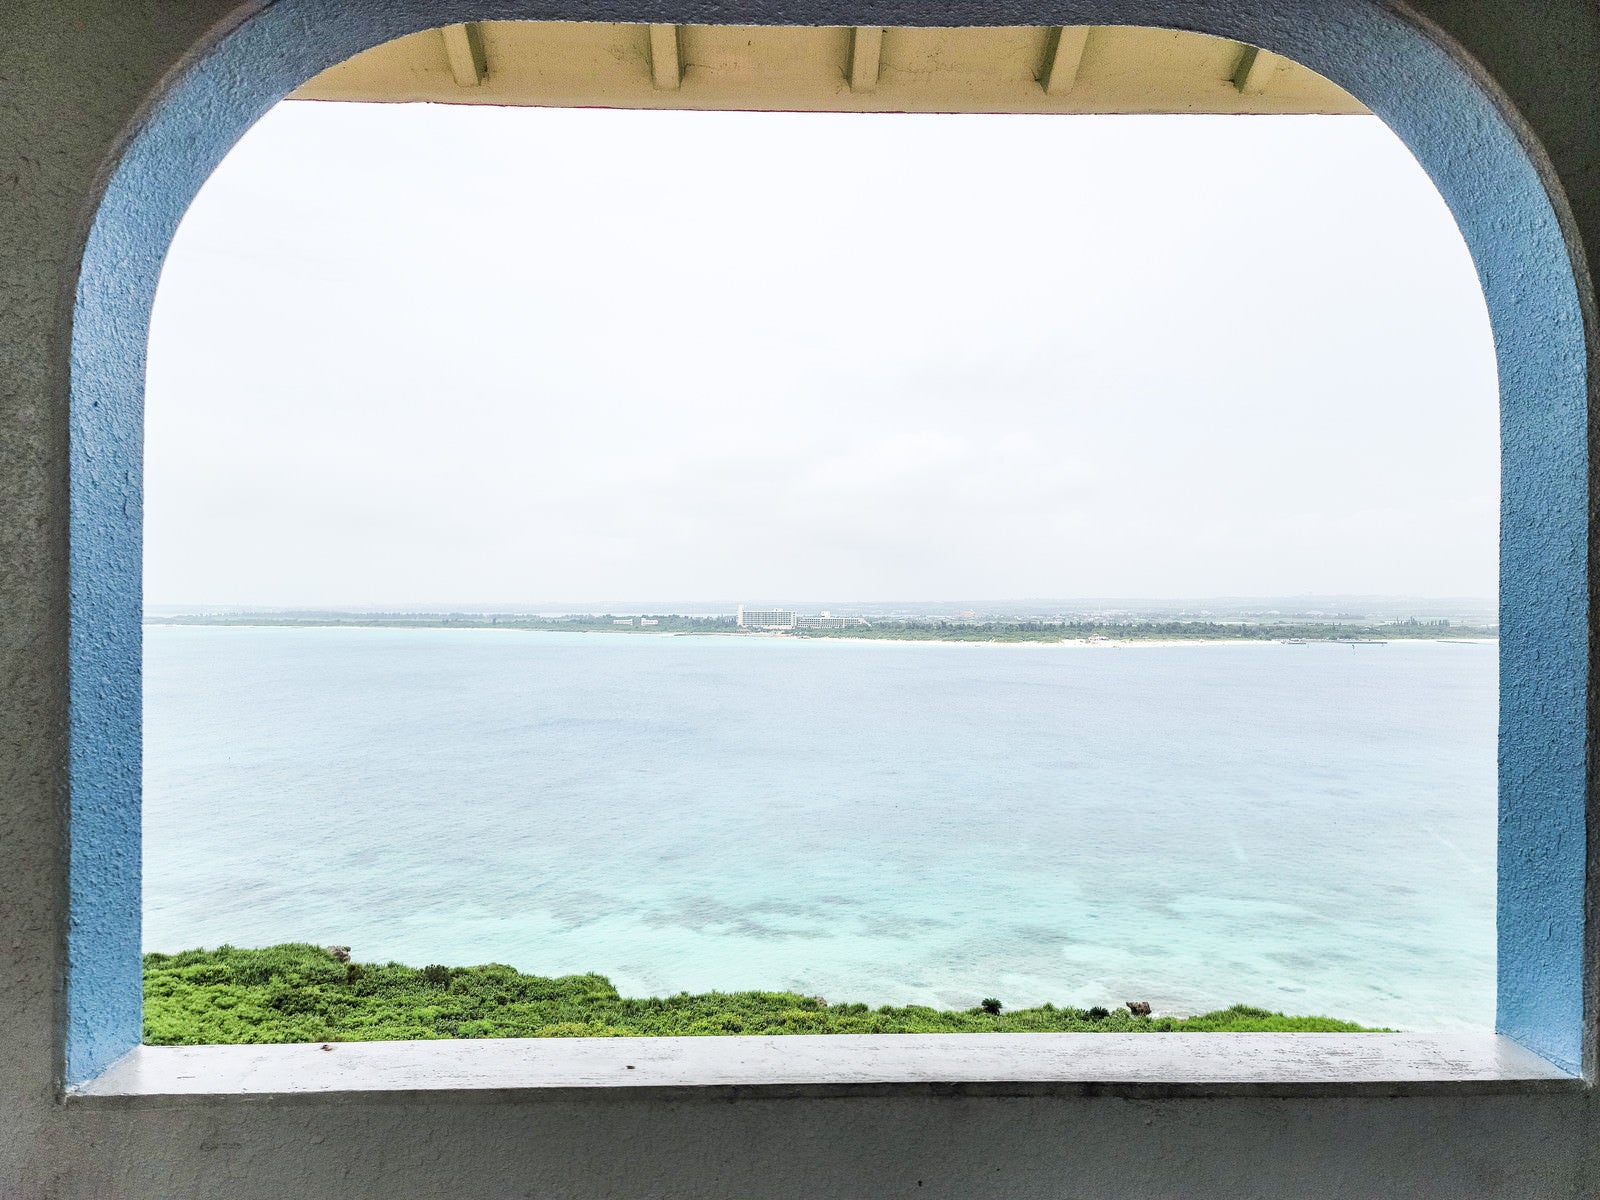 「窓から見る宮古島の海」の写真